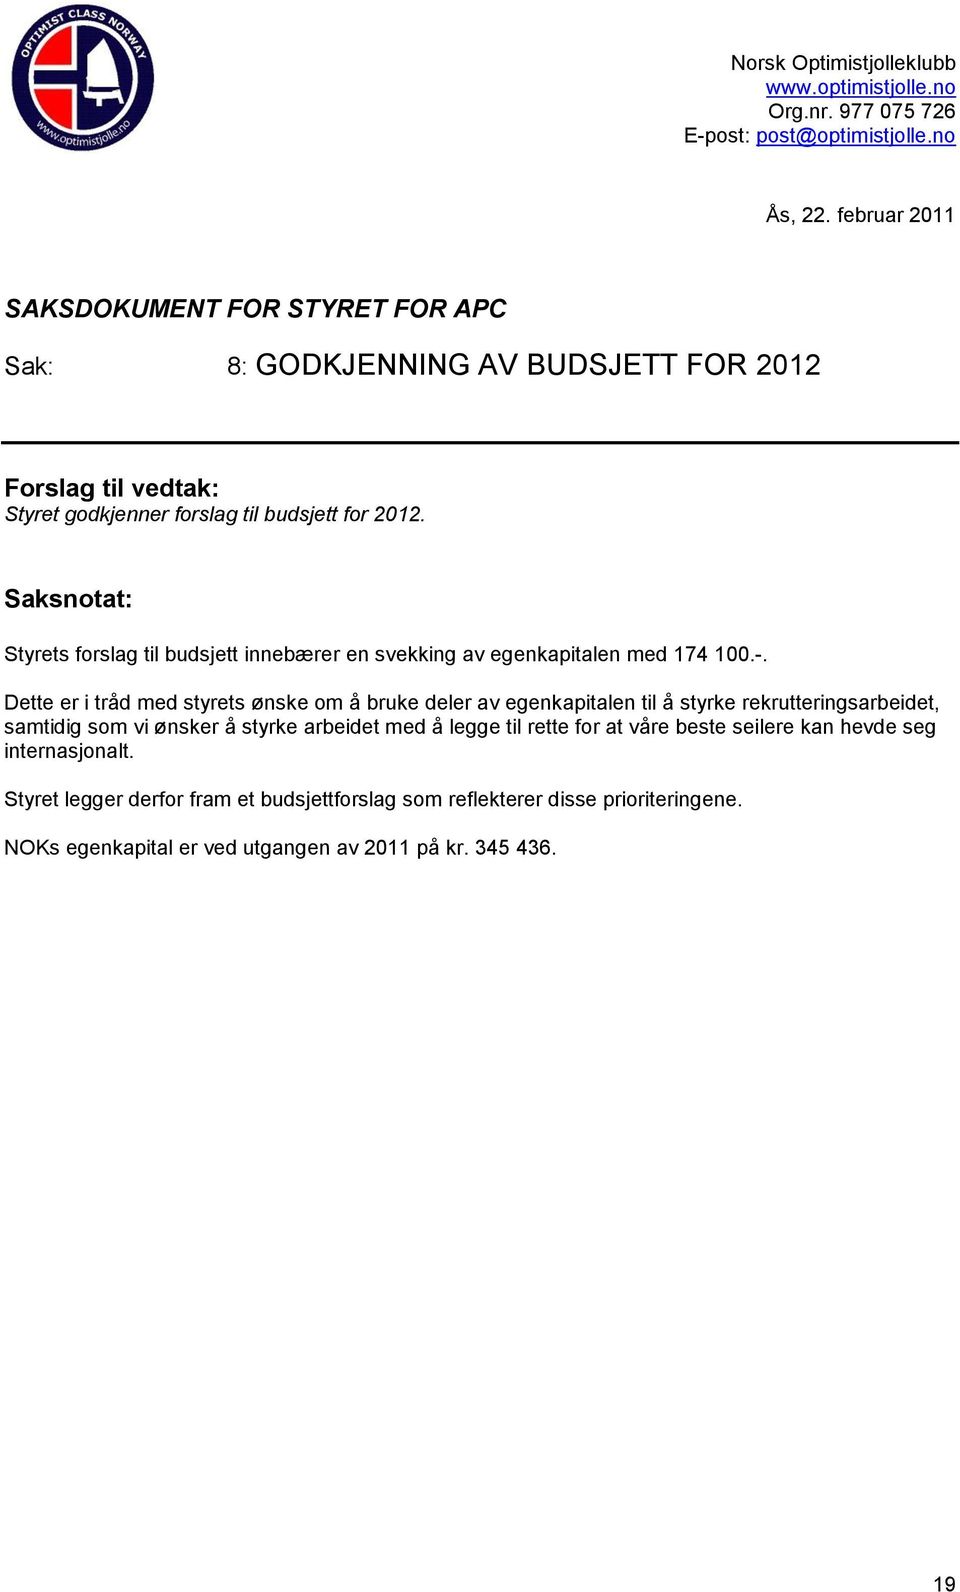 Saksnotat: Styrets forslag til budsjett innebærer en svekking av egenkapitalen med 174 100.-.